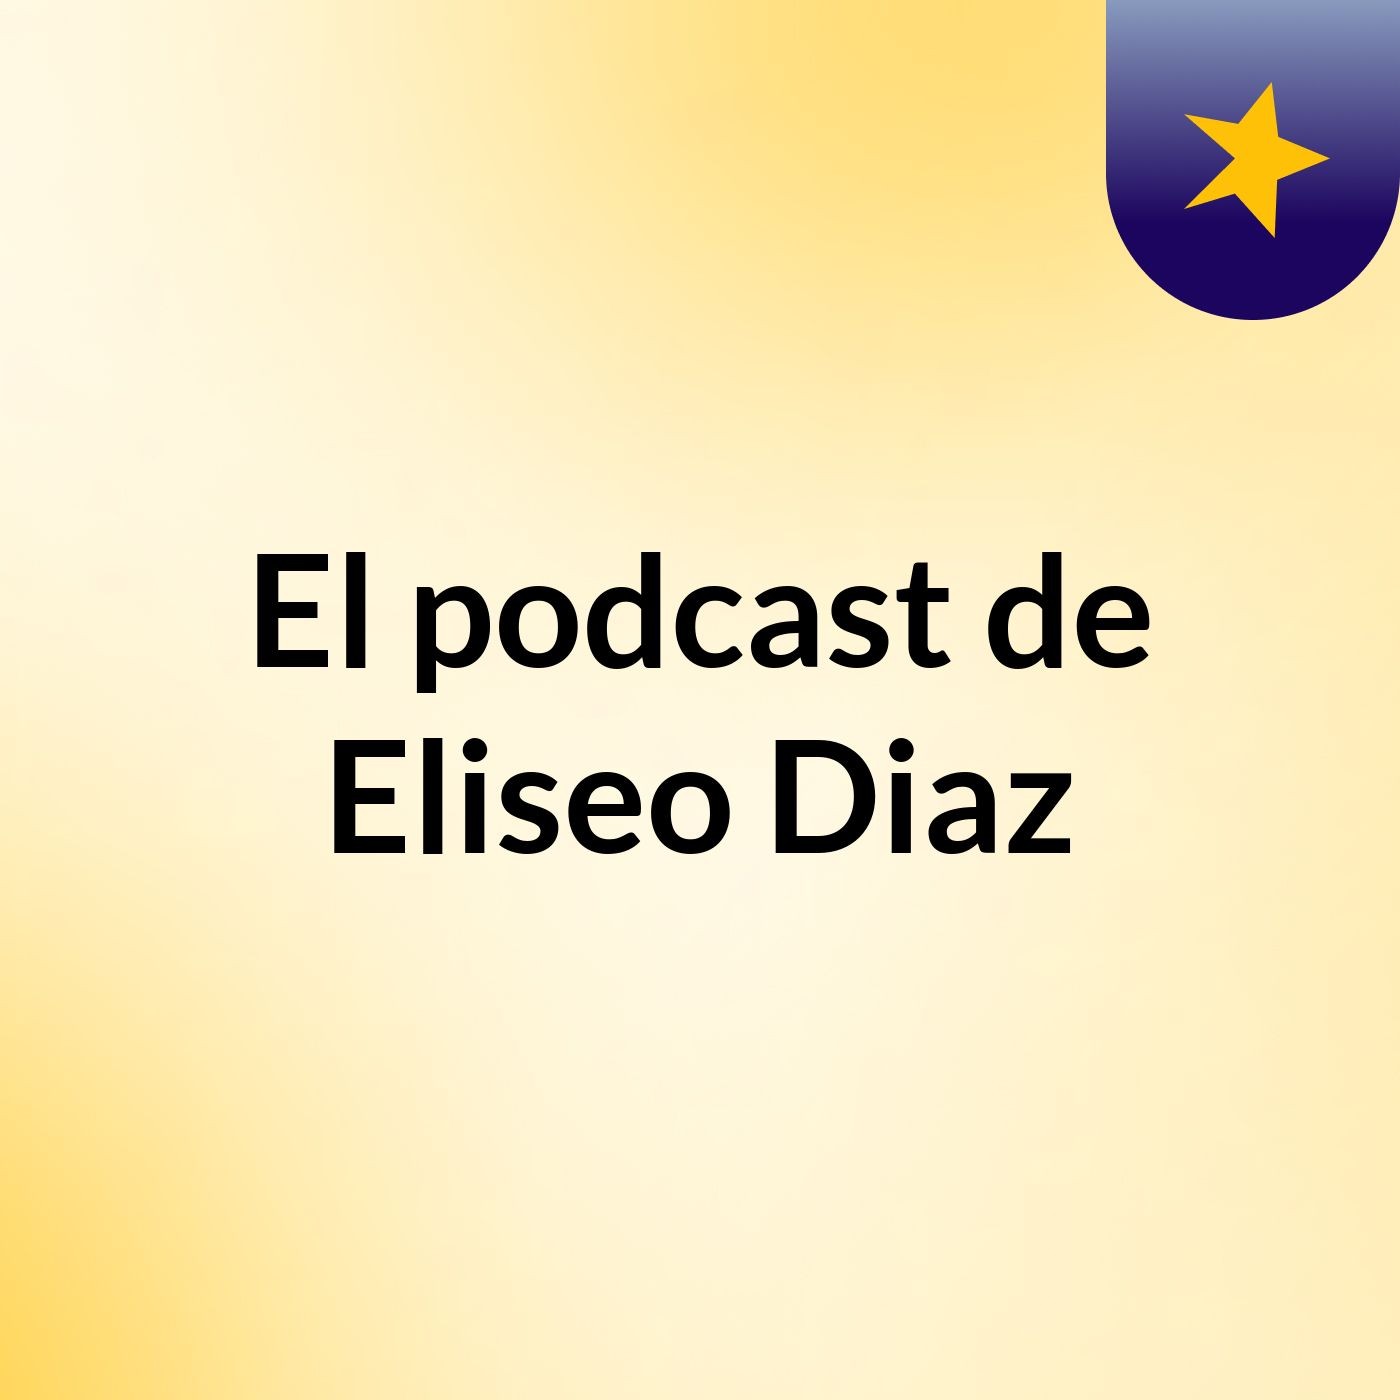 El podcast de Eliseo Diaz